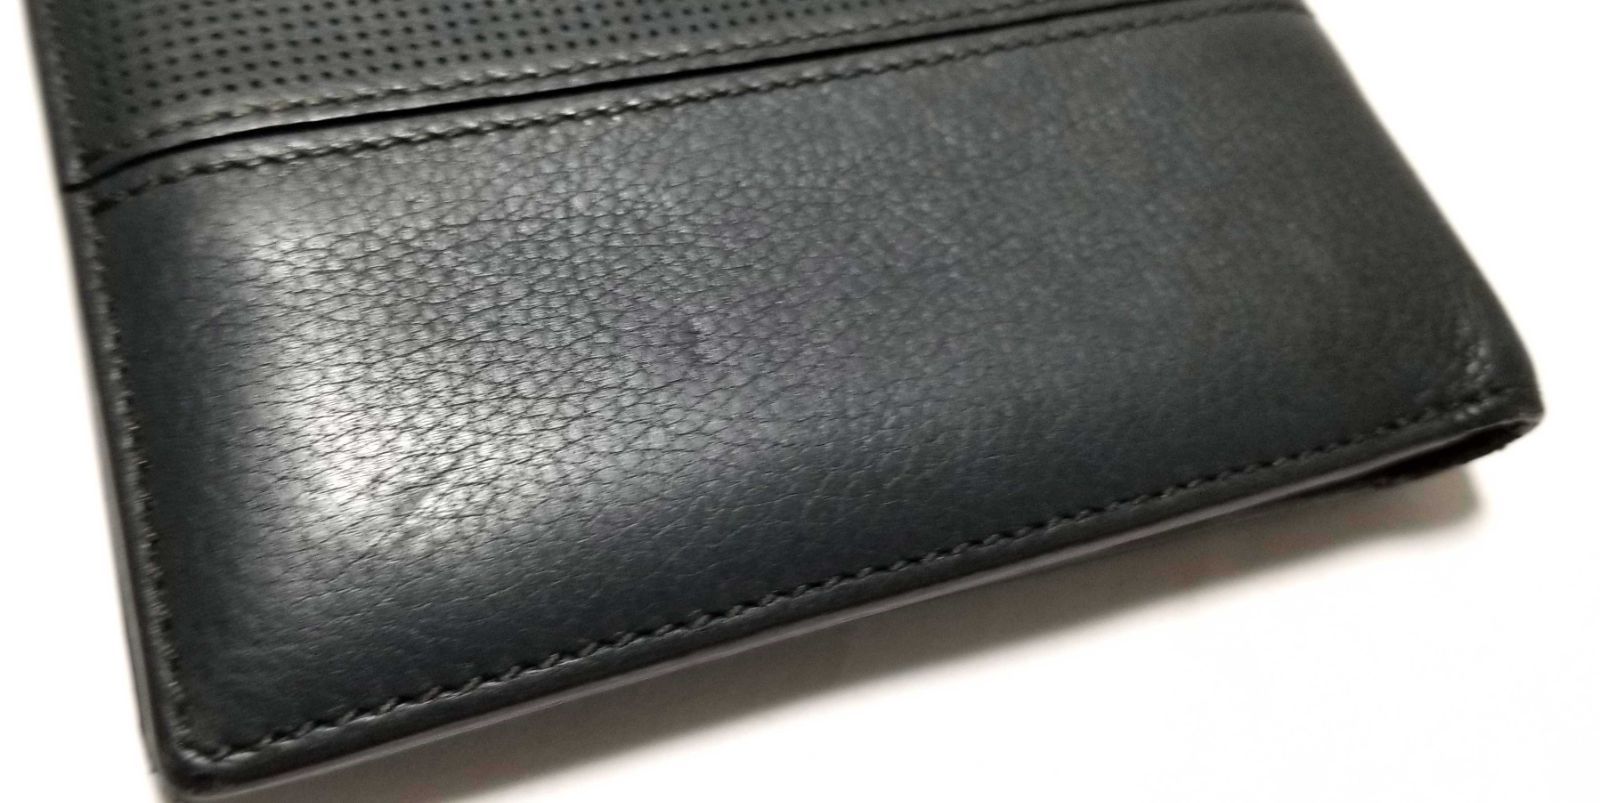 カルティエ 財布 二つ折り パンチングレザー 札入れ ダークグリーン メンズ 紳士用 カードケース Cartier